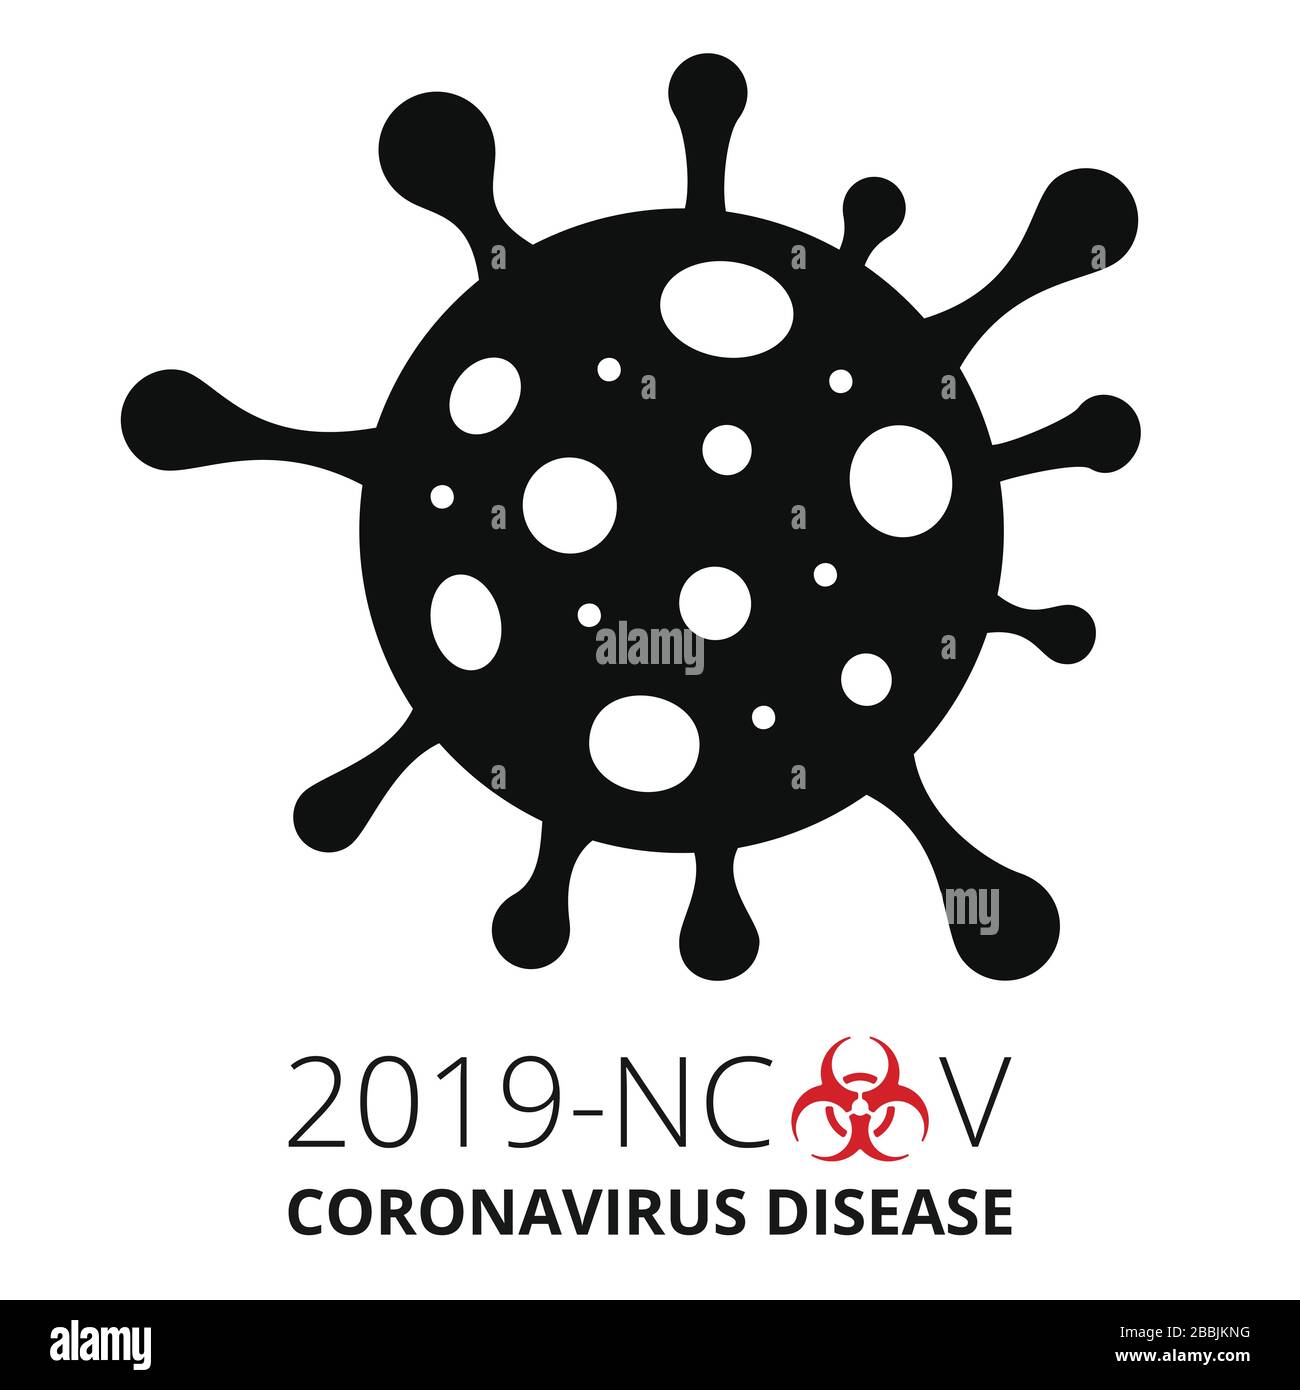 Pandémique Novel Coronavirus COVID-19. Éclosion dangereuse de coronavirus 2019-nCoV. Le ronavirus nCoV indiqué est un virus à ARN toronné à une seule brin. Virus dangereux Illustration de Vecteur